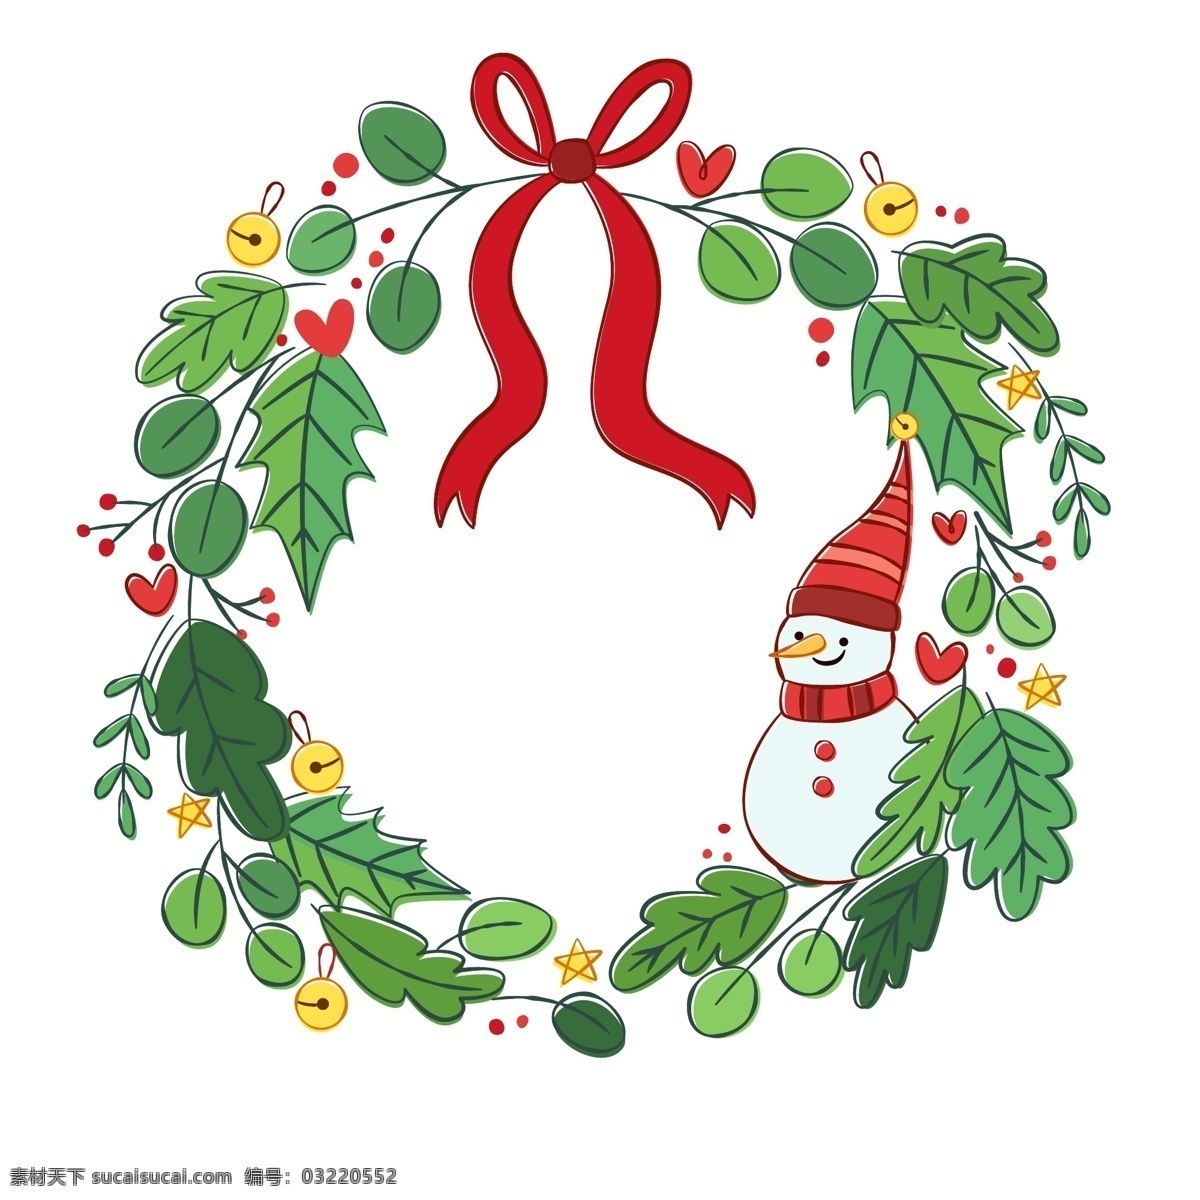 创意 绿色 圣诞 雪人 花环 矢量 丝带 爱心 铃铛 枸骨 松枝 浆果 圣诞节 文化艺术 节日庆祝